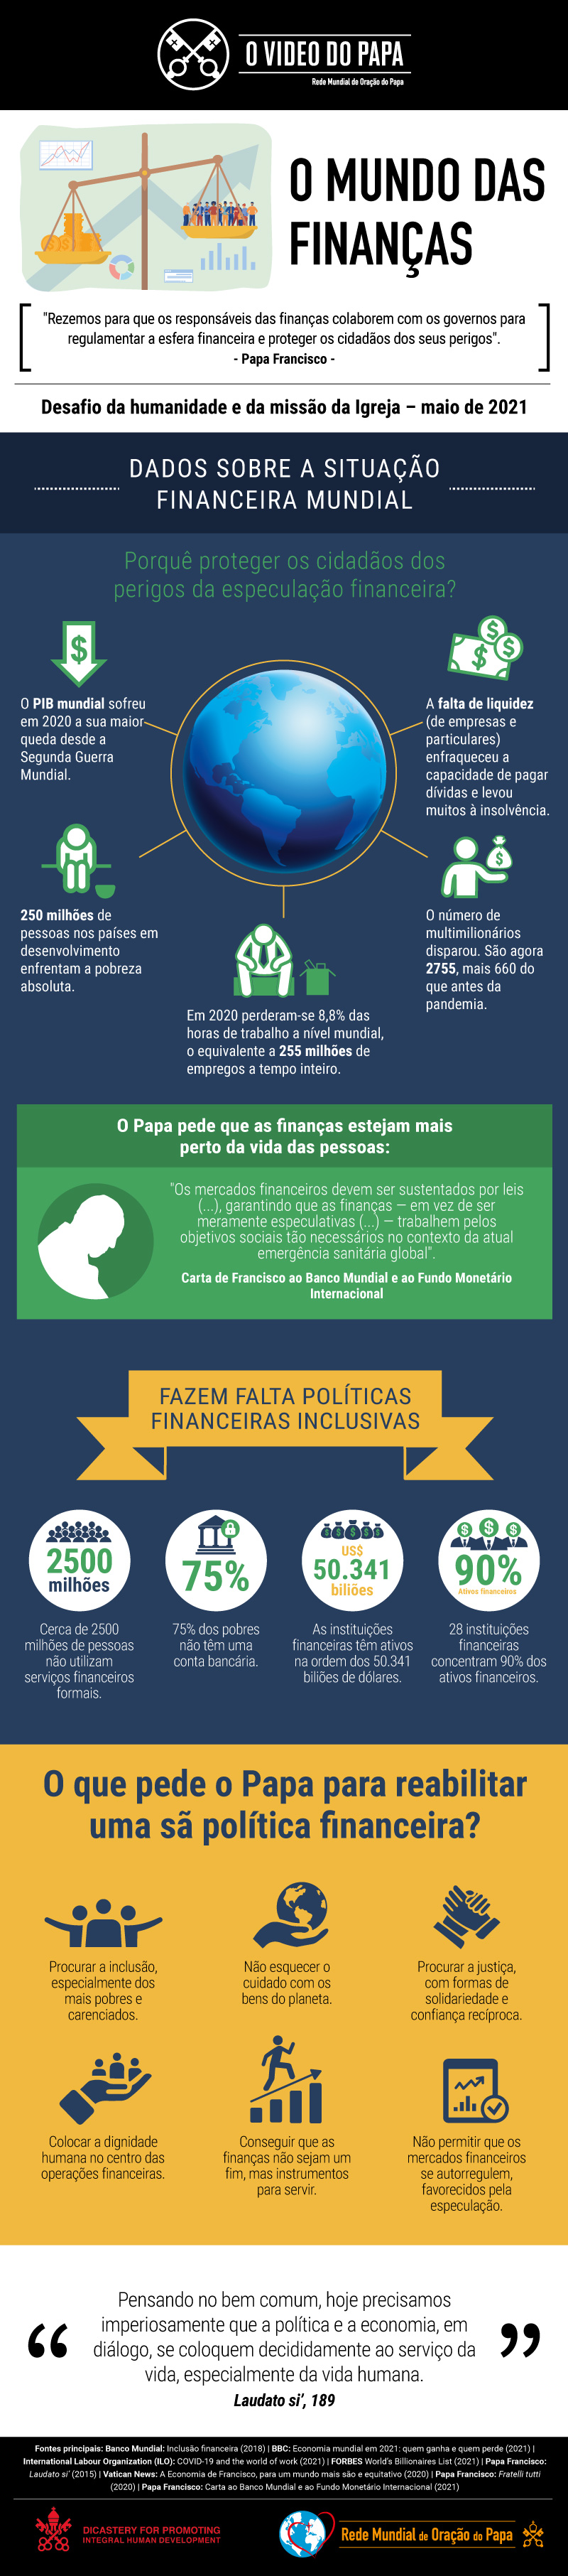 Infografia-TPV-5-2021-PT-O-mundo-das-financas.jpg